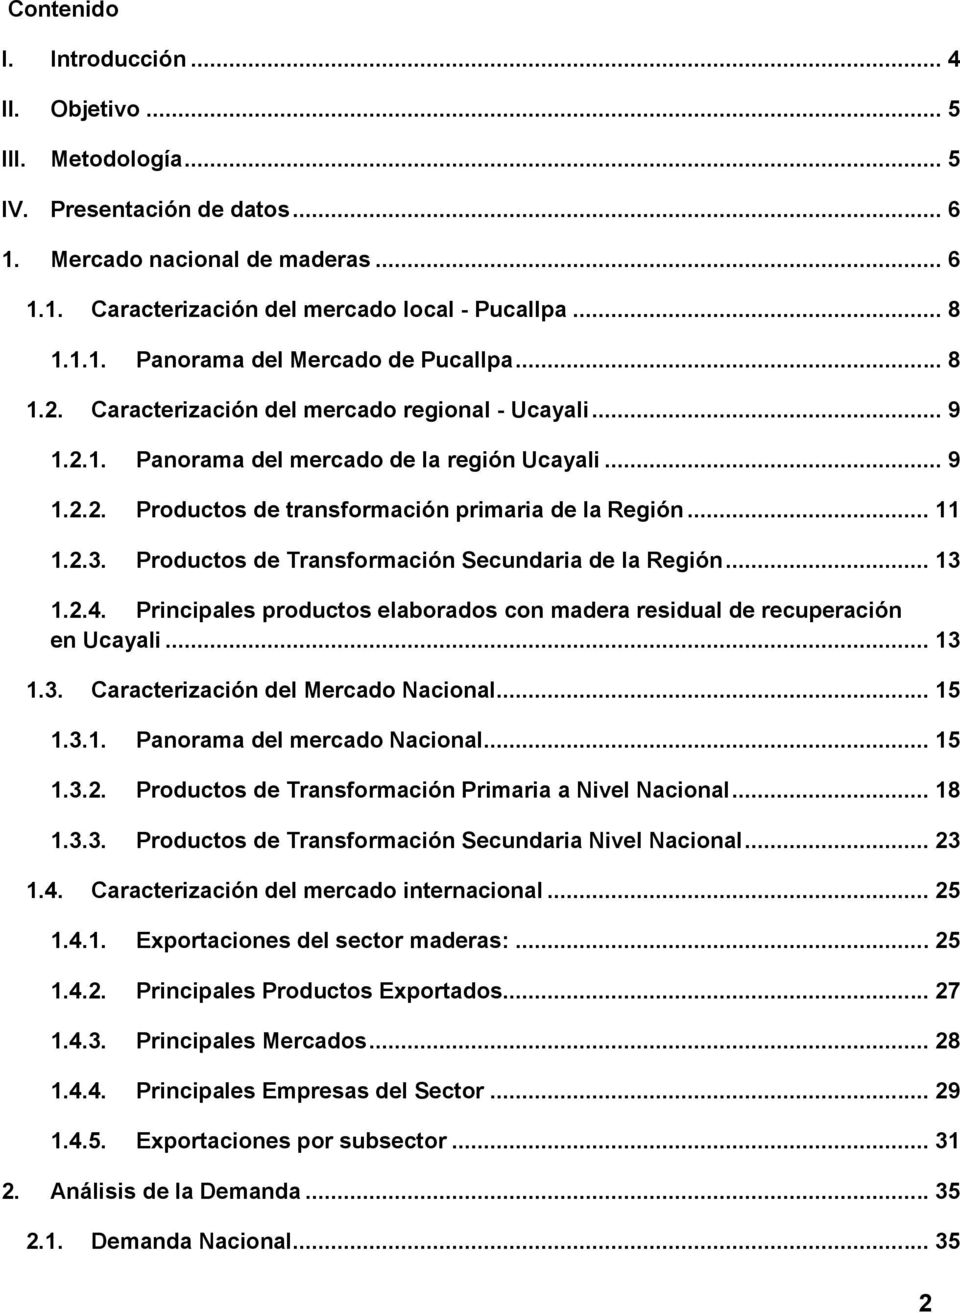 Productos de Transformación Secundaria de la Región... 13 1.2.4. Principales productos elaborados con madera residual de recuperación en Ucayali... 13 1.3. Caracterización del Mercado Nacional... 15 1.